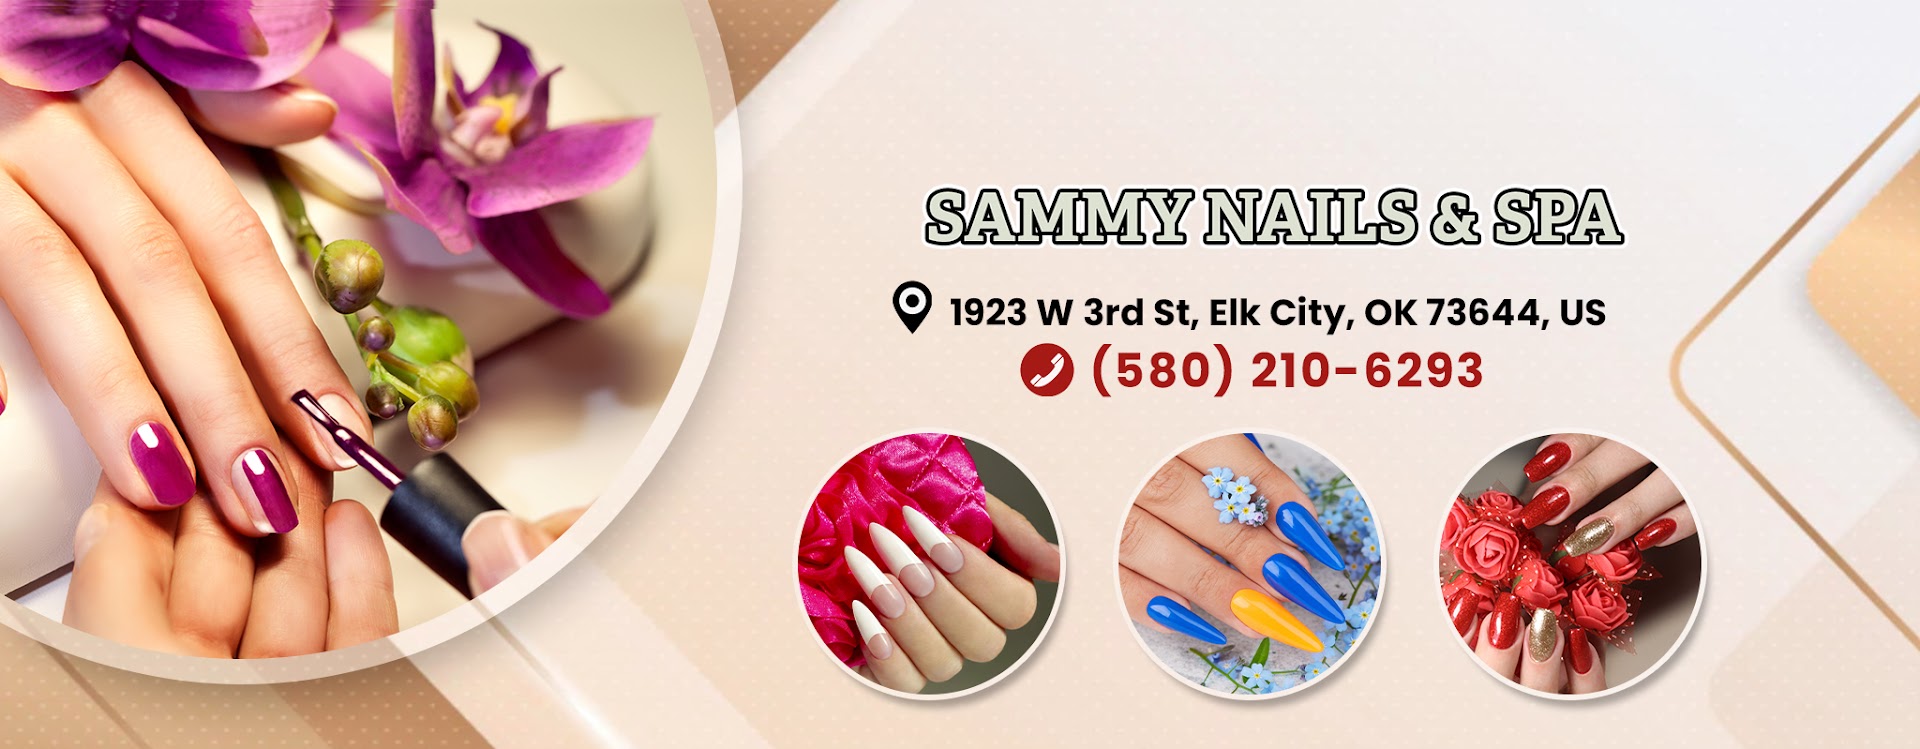 Sammy Nails & Spa